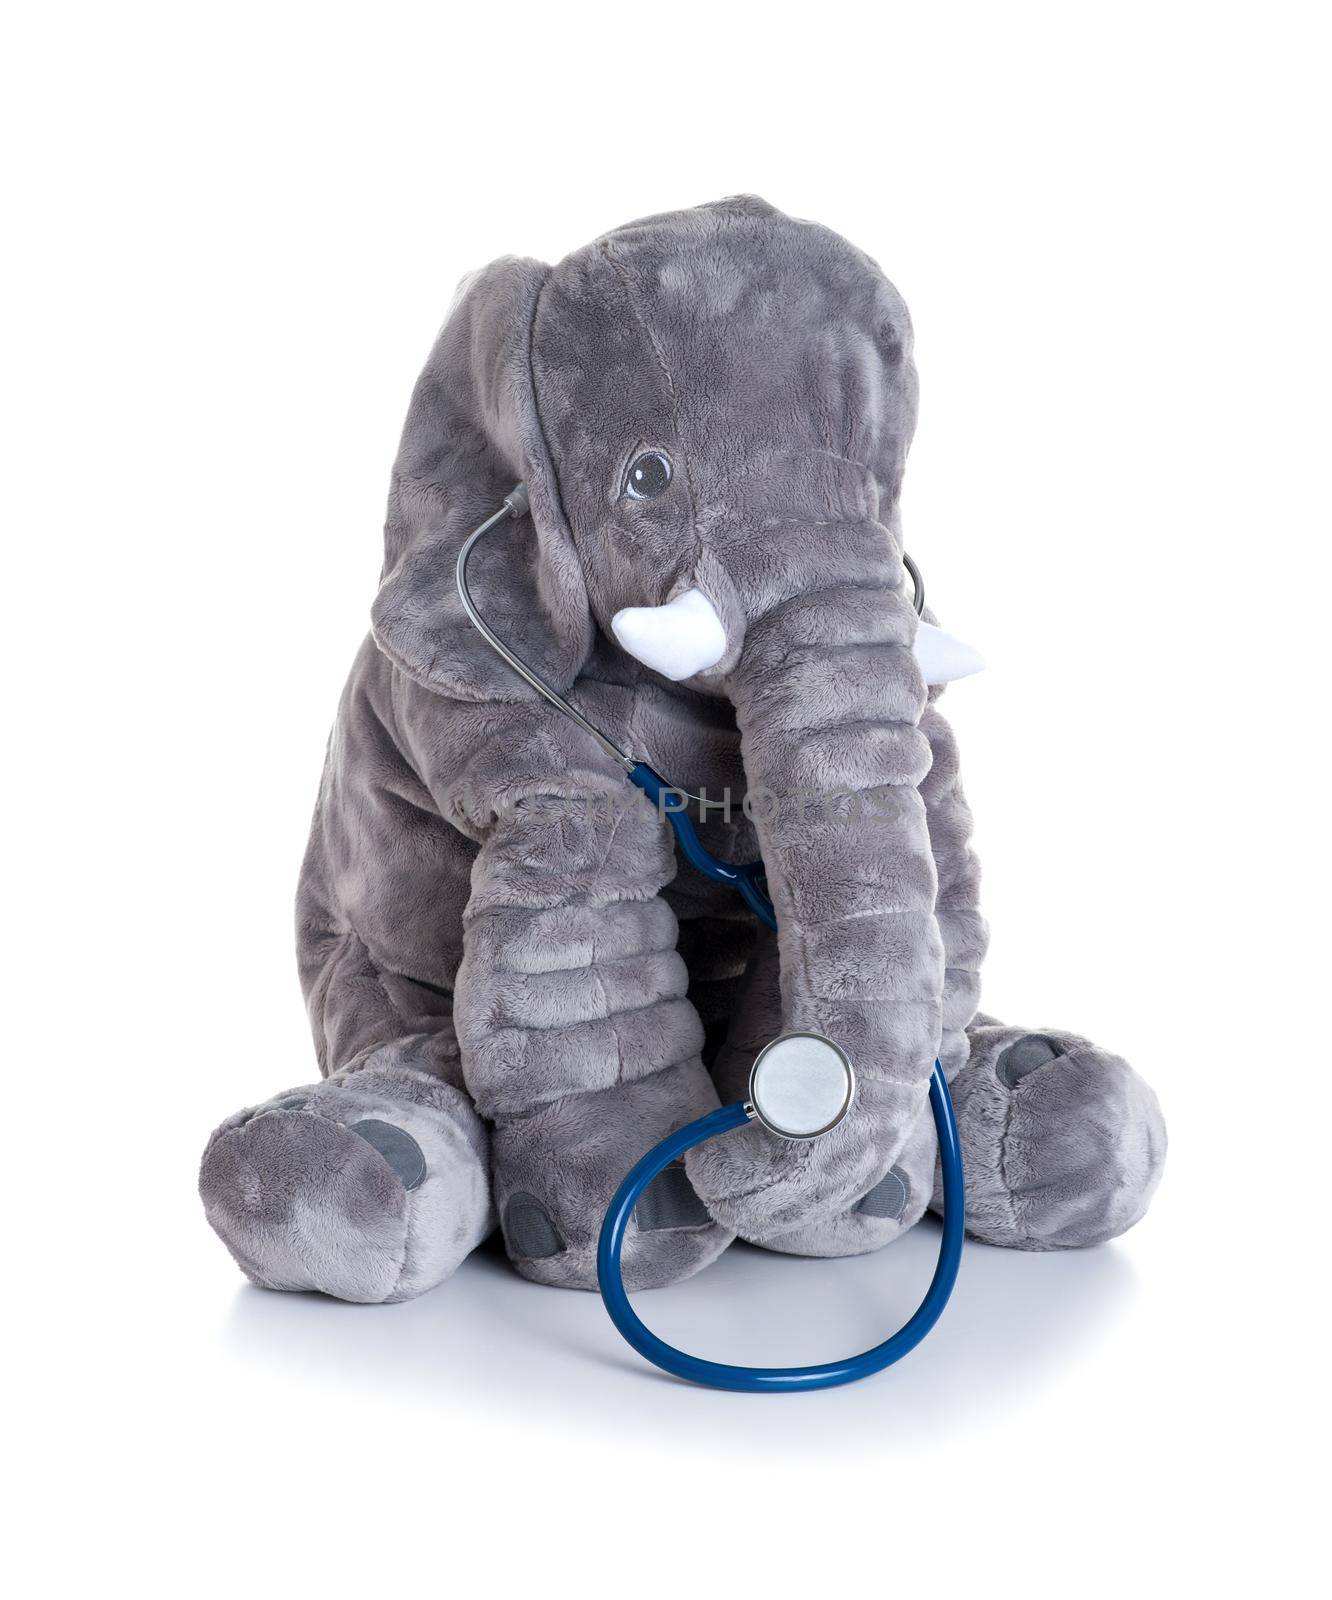 fluffy elephant doll by norgal